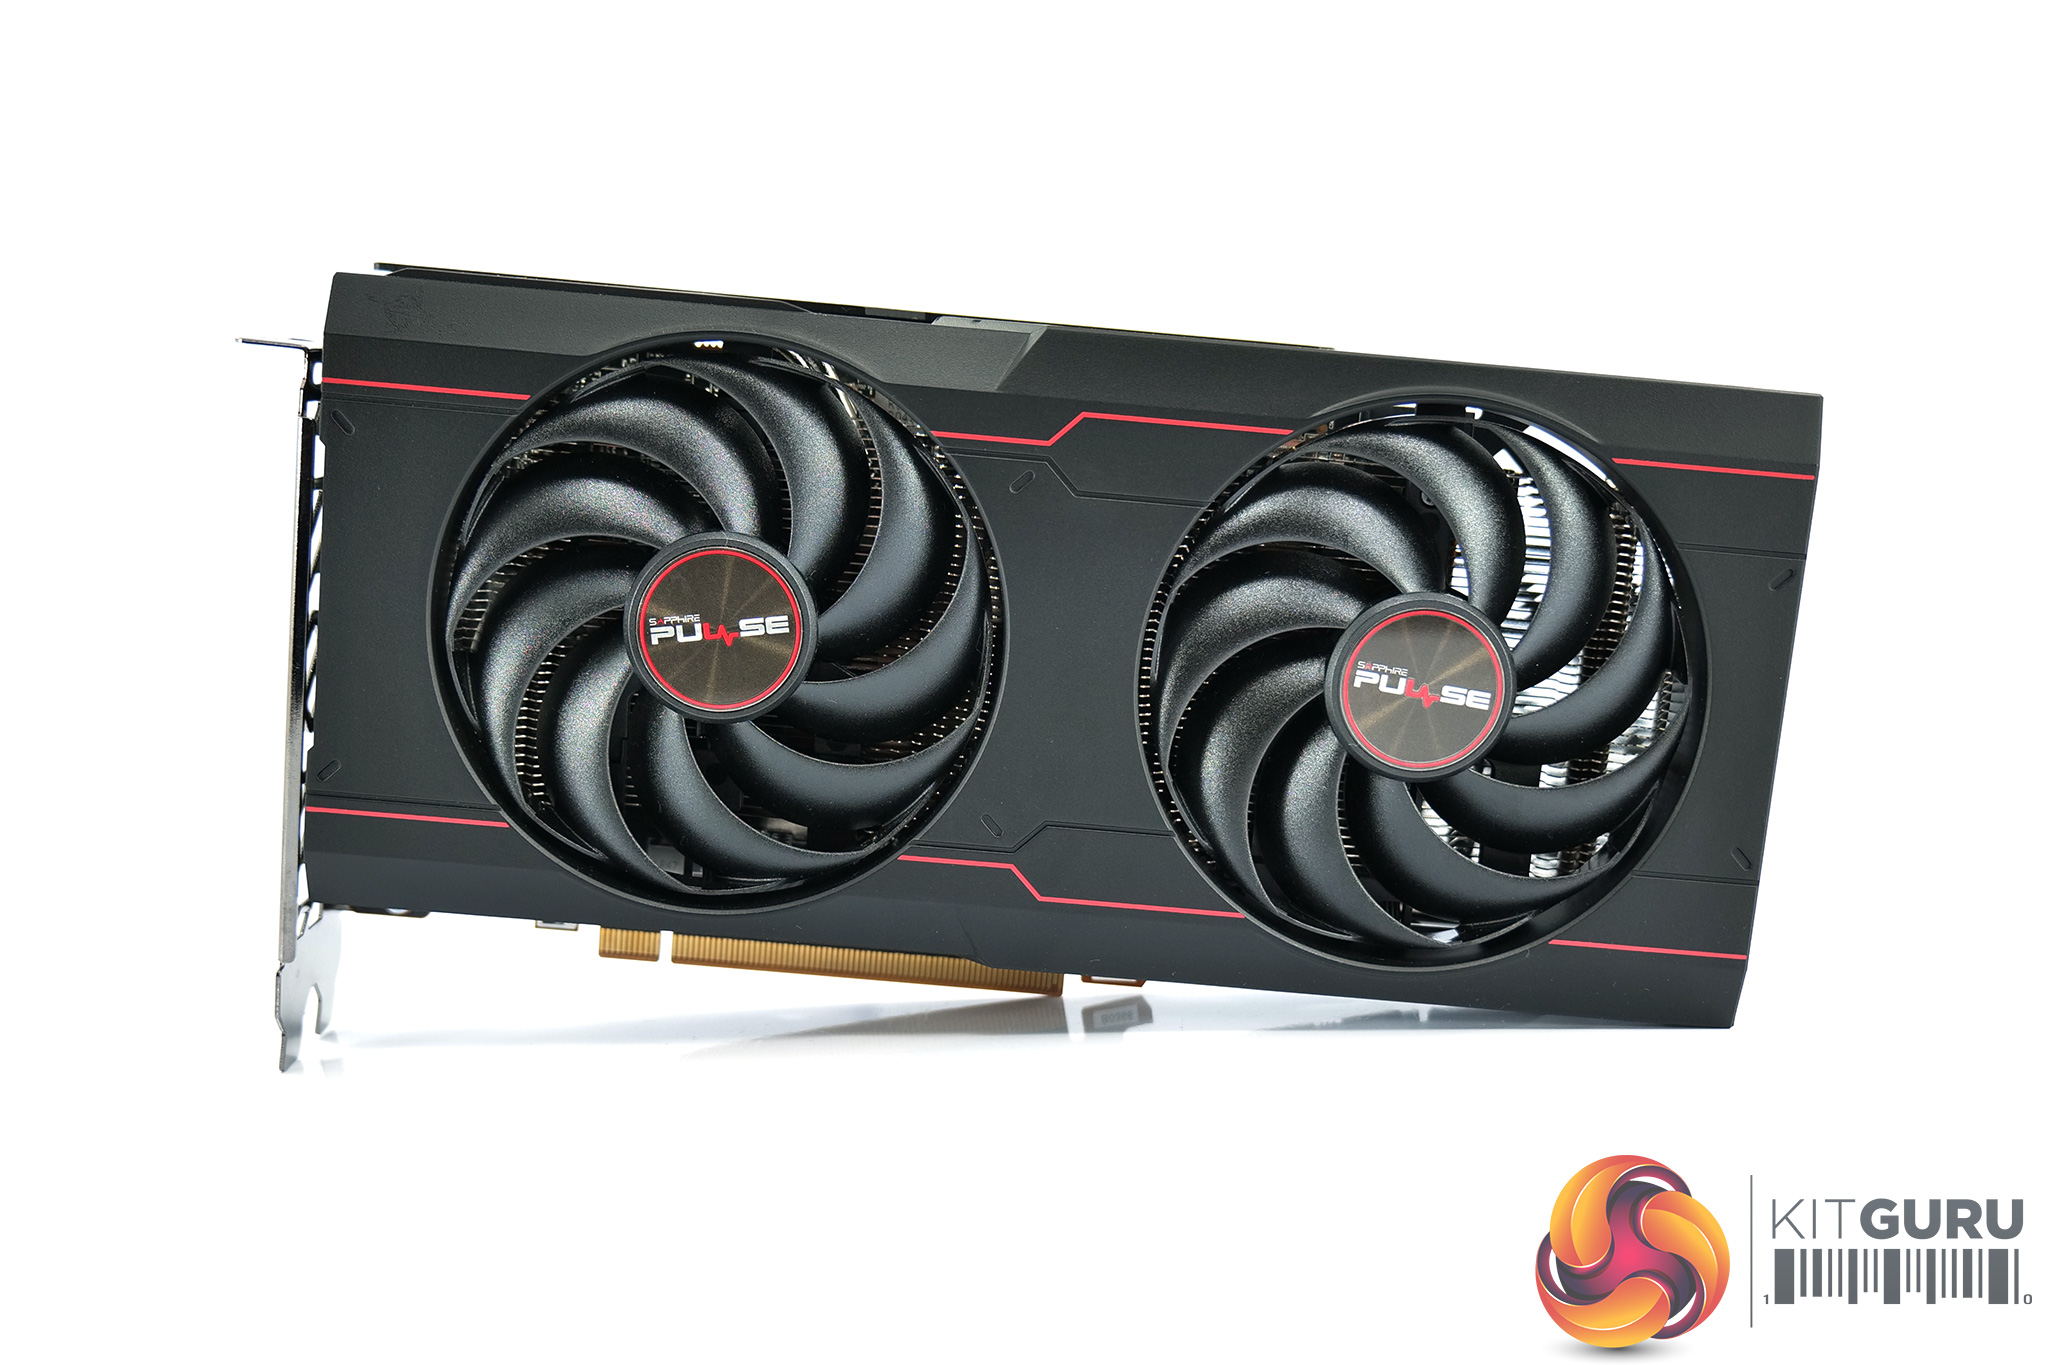 Sapphire Radeon RX 6600 XT Pulse OC Review - Value & Conclusion